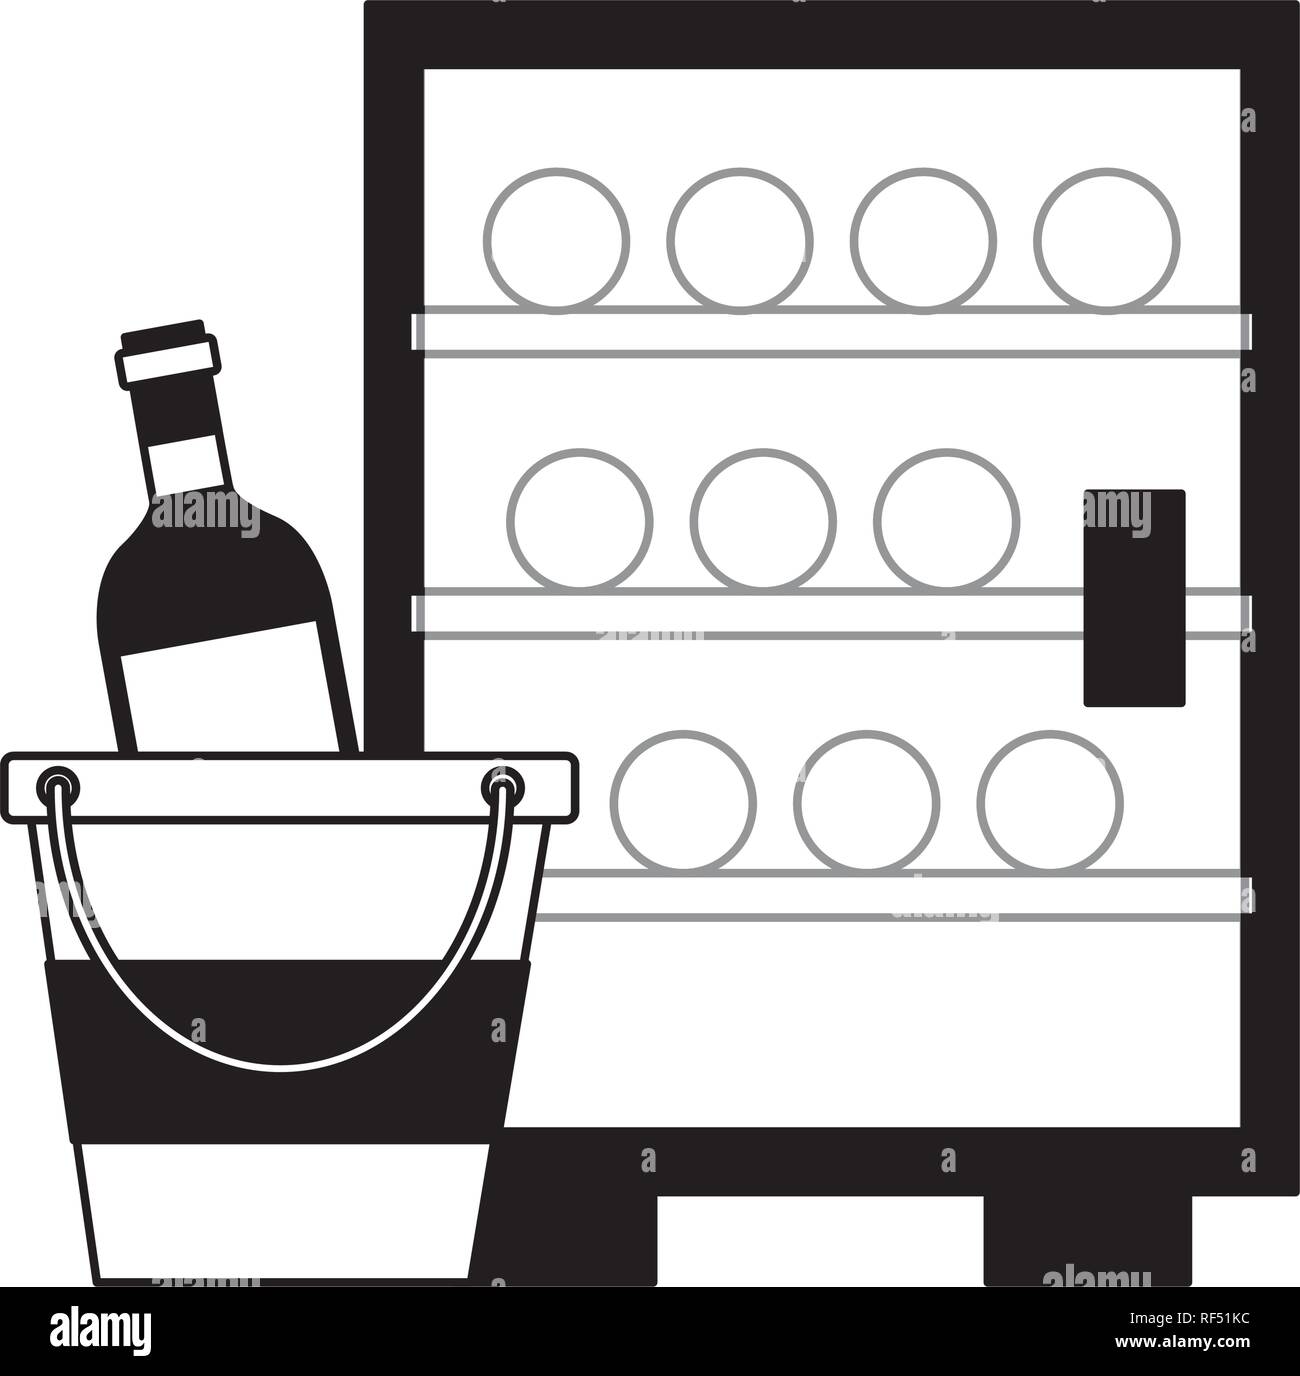 Réfrigérateur bouteilles de vin seau à glaçons Illustration de Vecteur